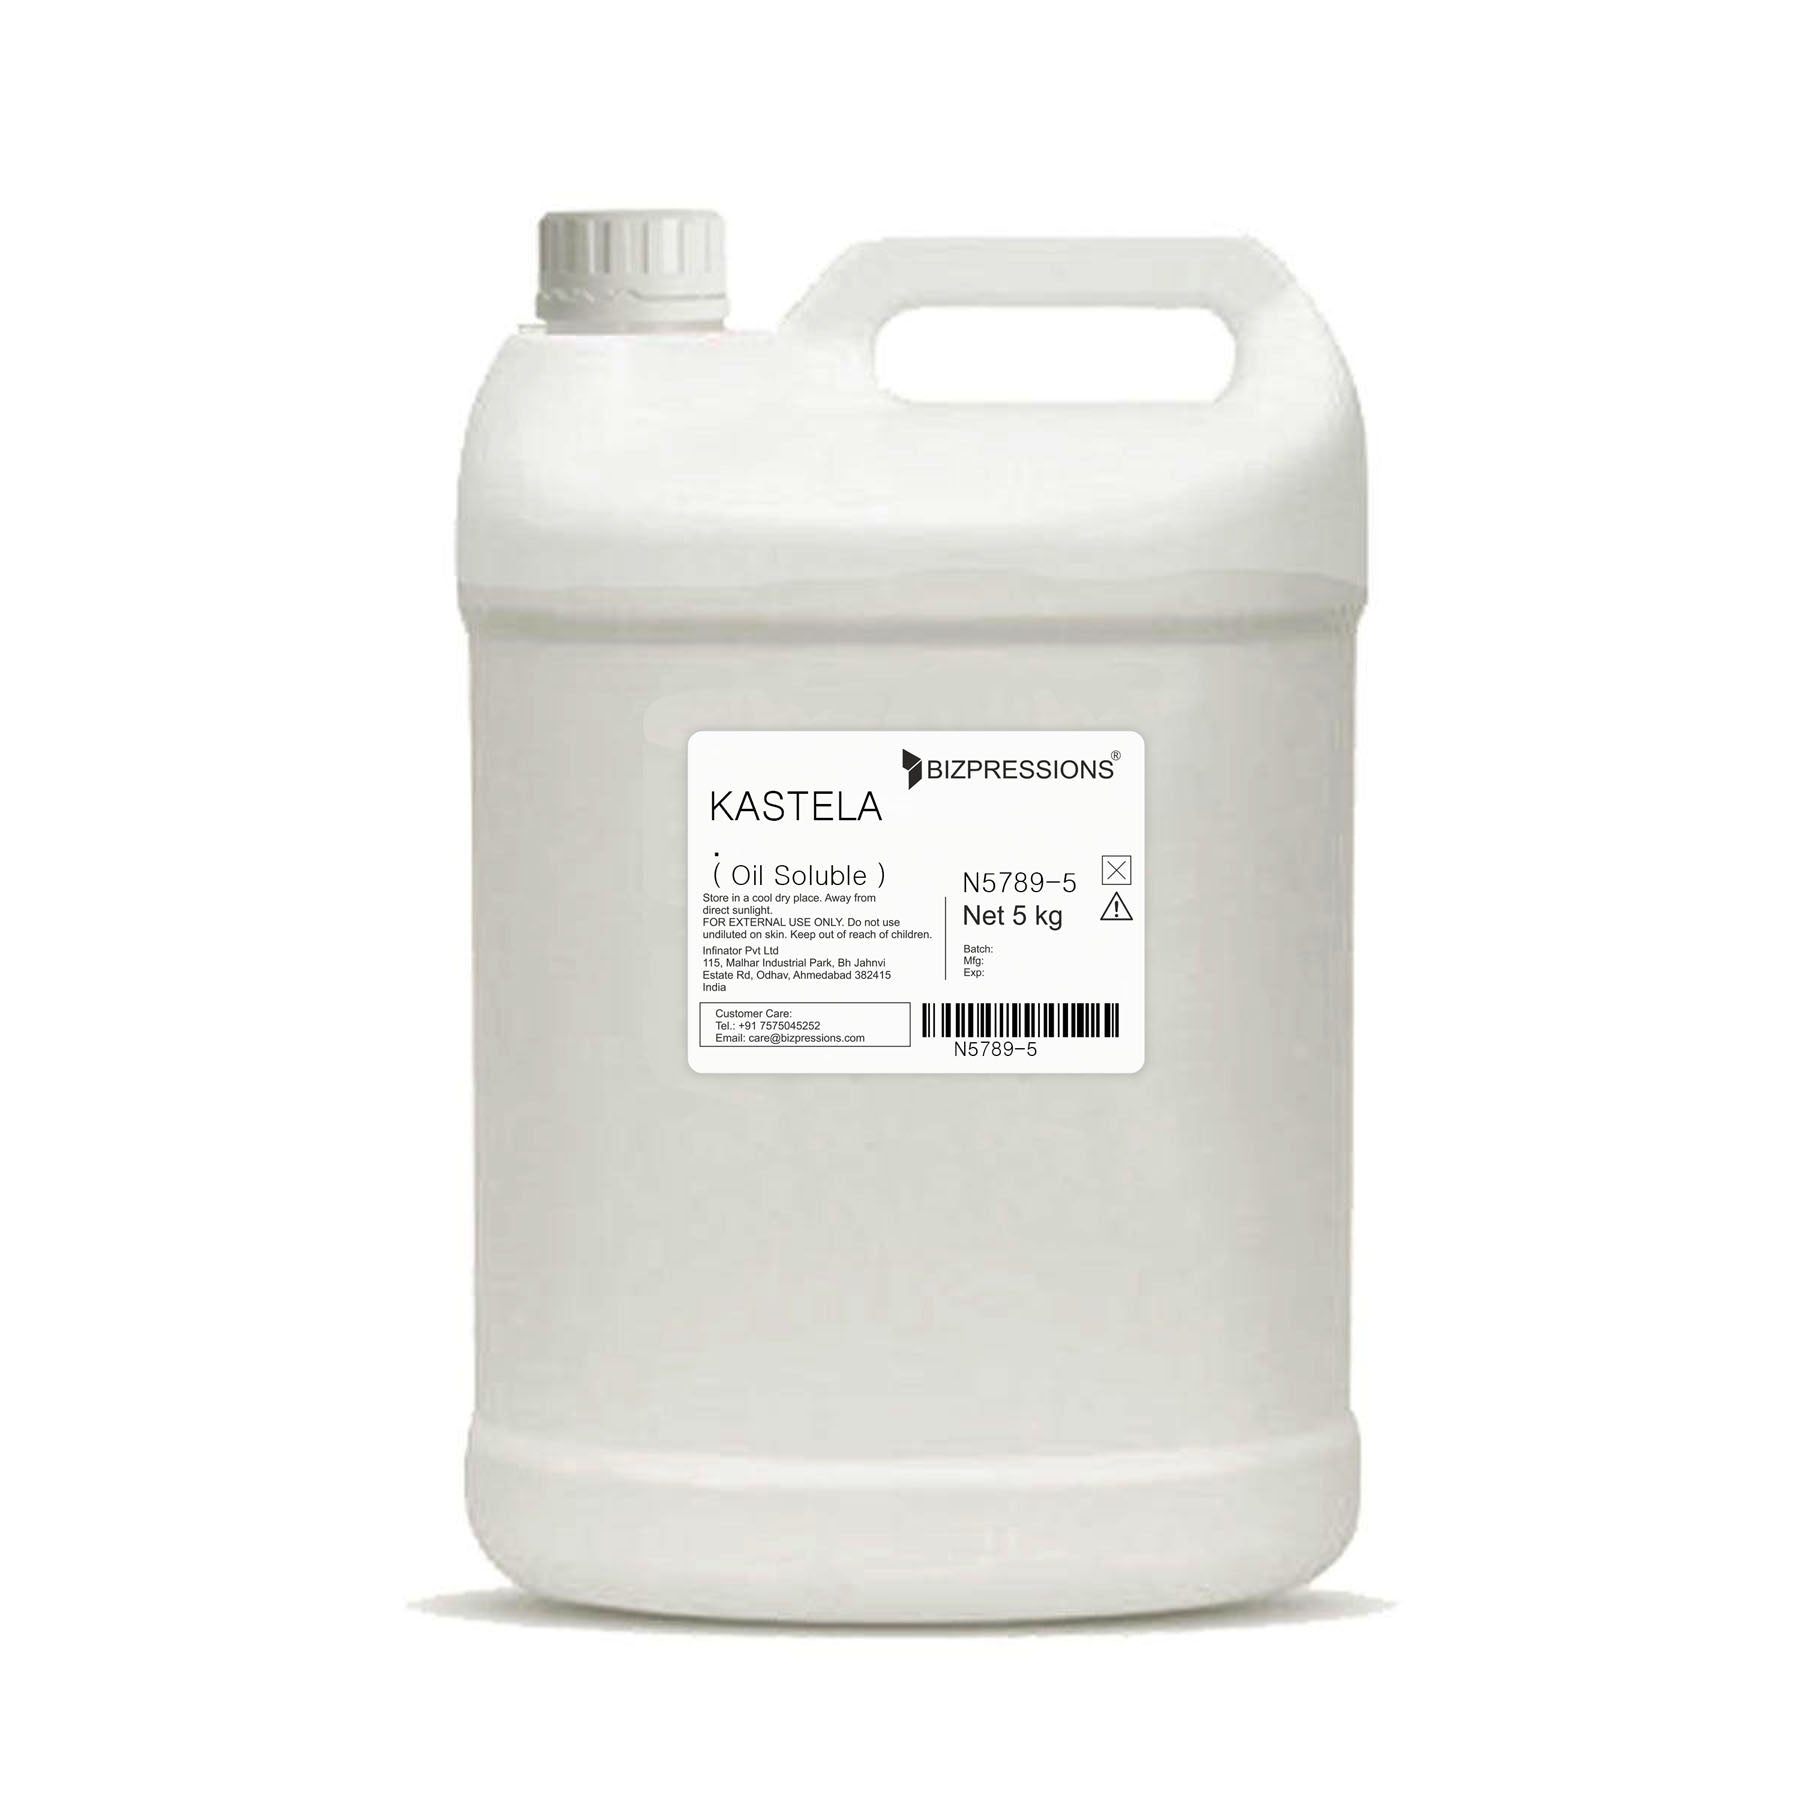 KASTELA - Fragrance ( Oil Soluble ) - 5 kg